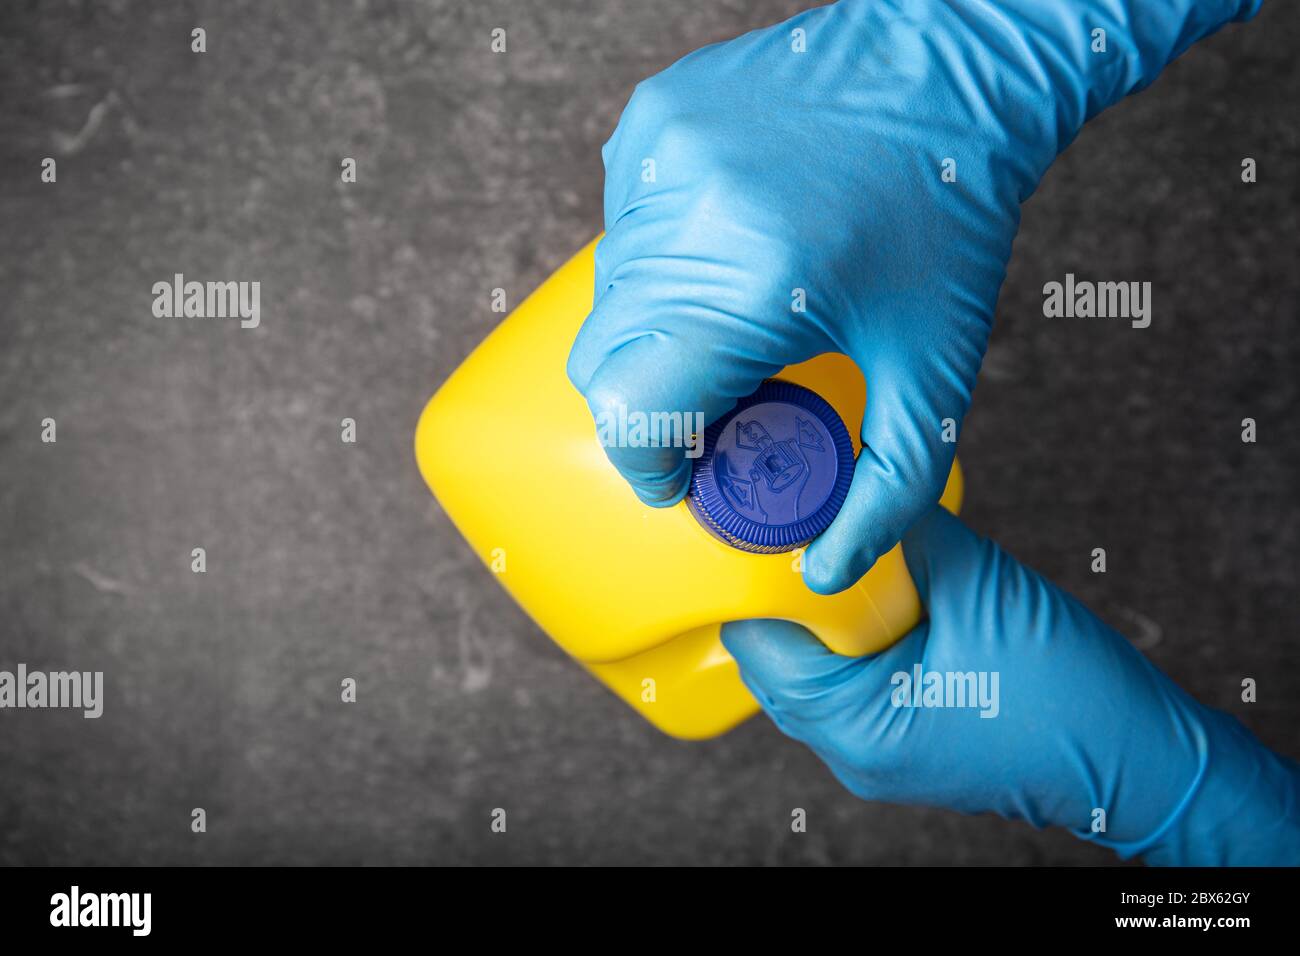 Mano umana in un guanto protettivo che apre un flacone di candeggina giallo. Concetto di disinfezione Foto Stock